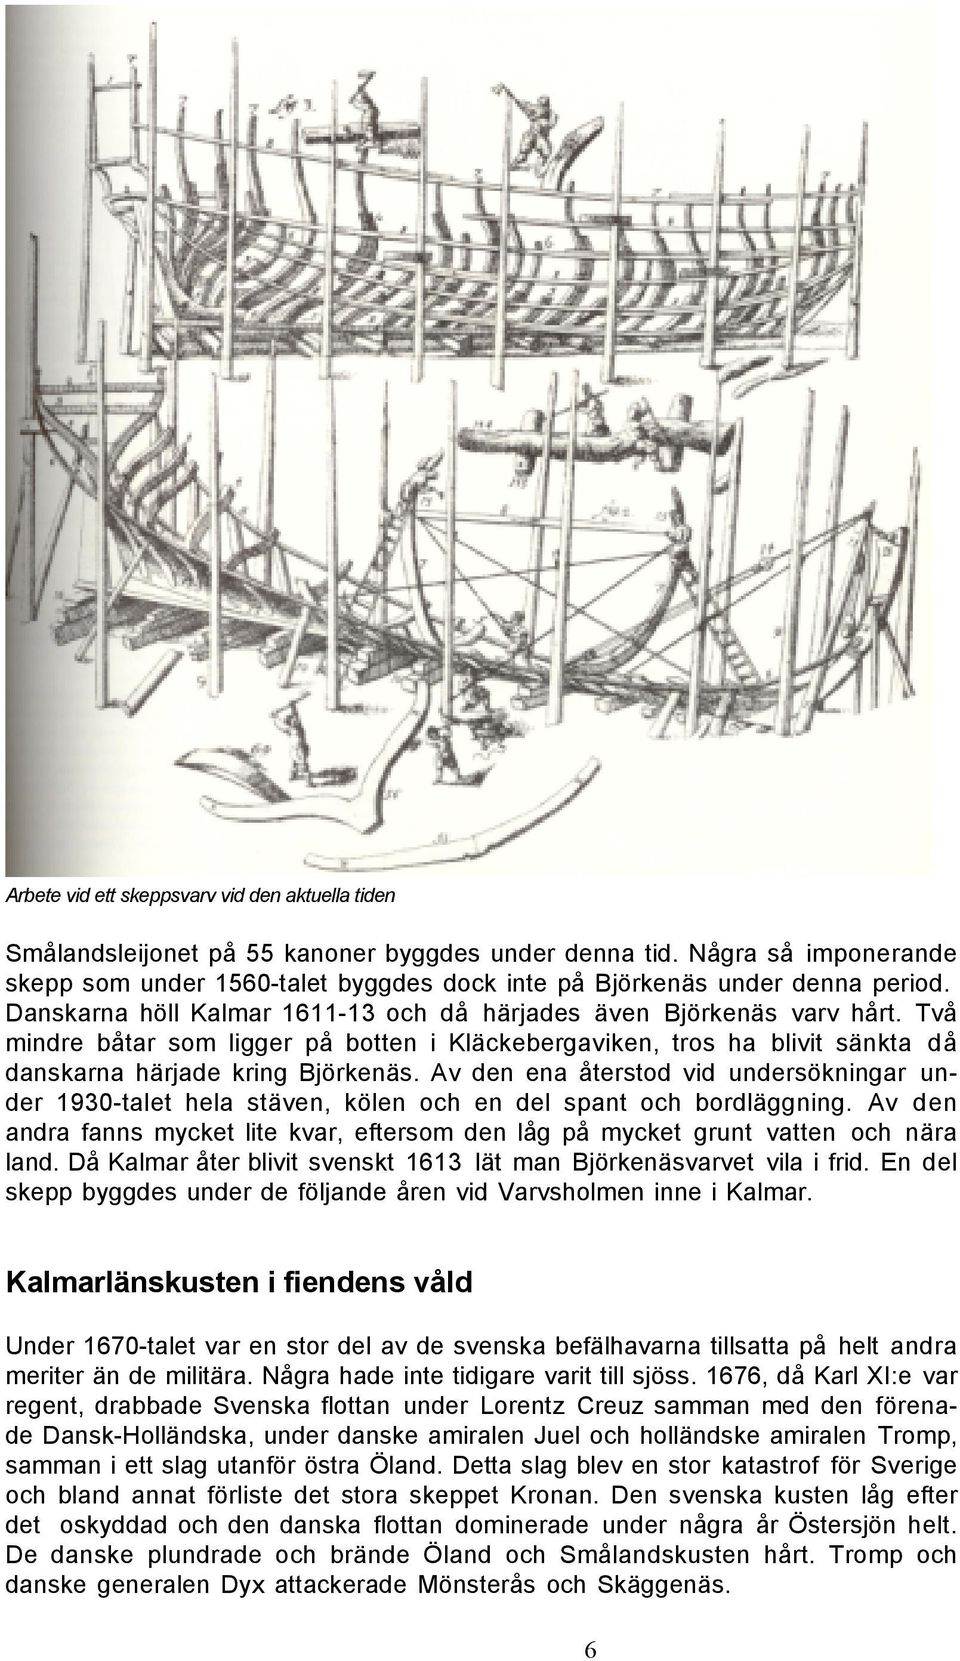 Två mindre båtar som ligger på botten i Kläckebergaviken, tros ha blivit sänkta då danskarna härjade kring Björkenäs.